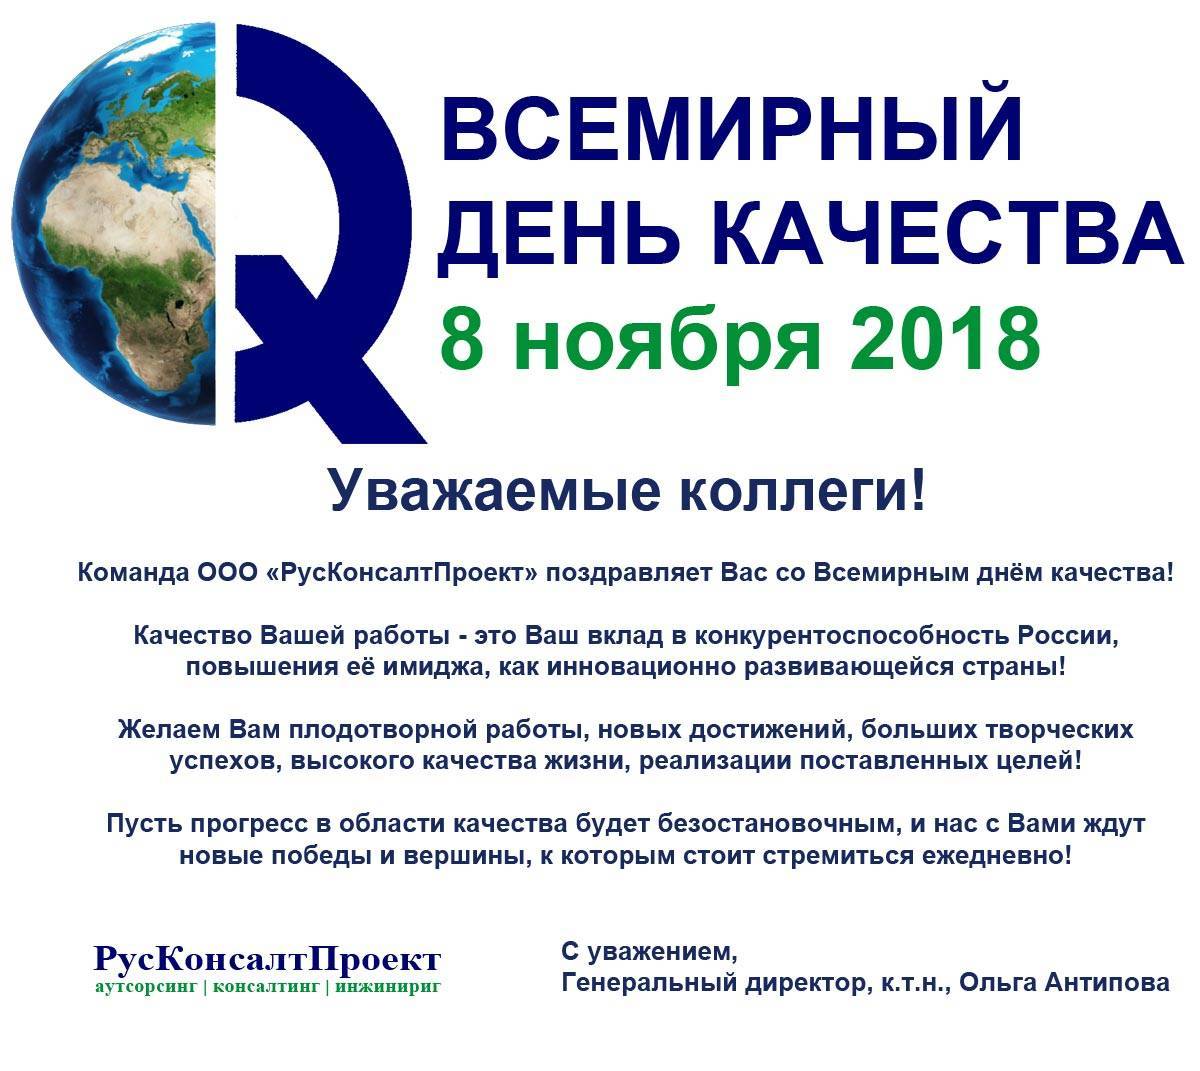 Всемирный день качества | fiestino.ru